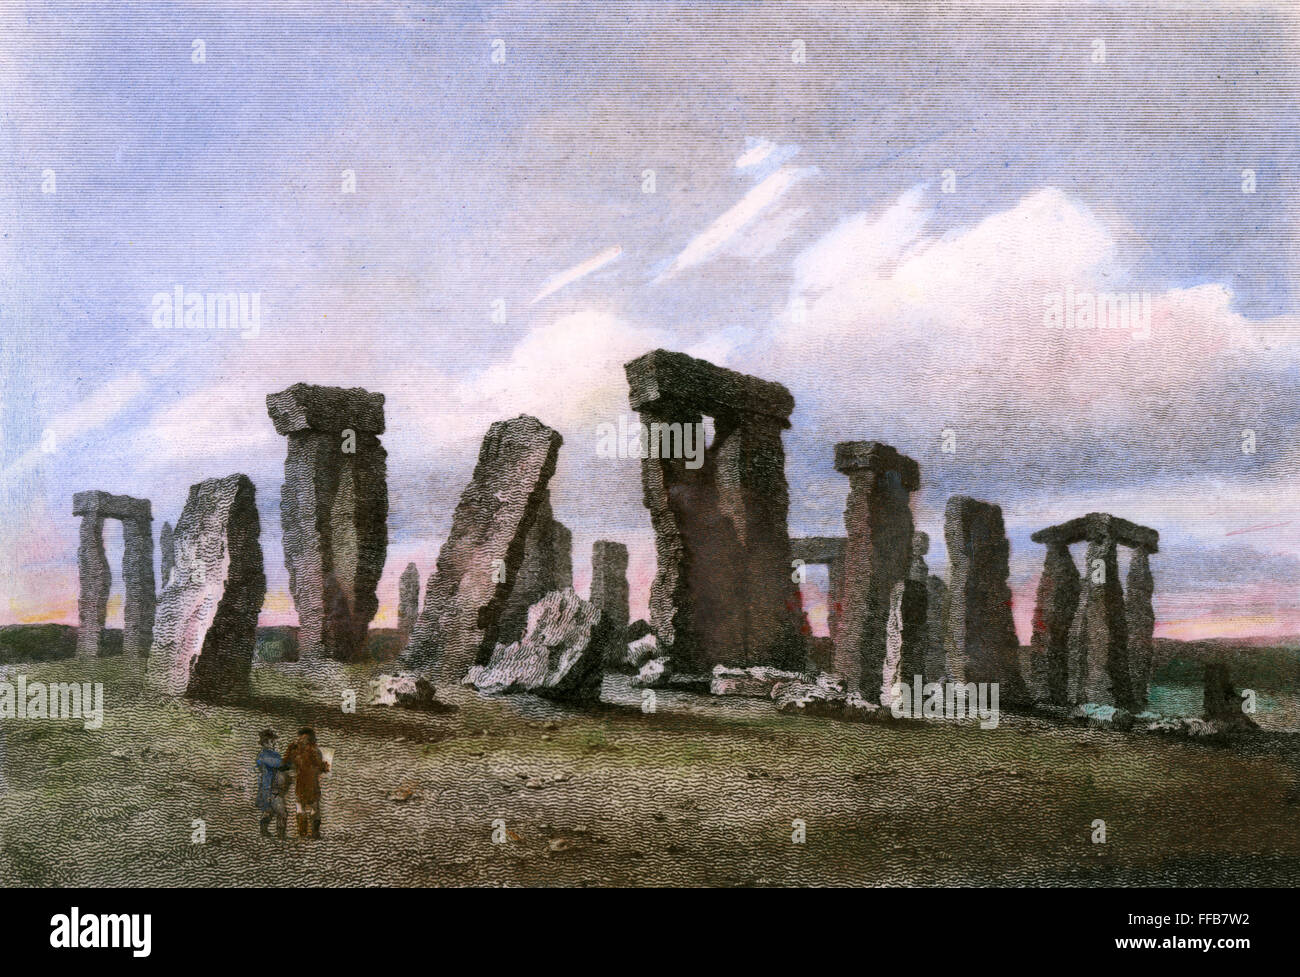 ENGLAND: STONEHENGE. /nStonehenge on Salisbury Plain, England. Line engraving, English, 1809, by George Cooke. Stock Photo